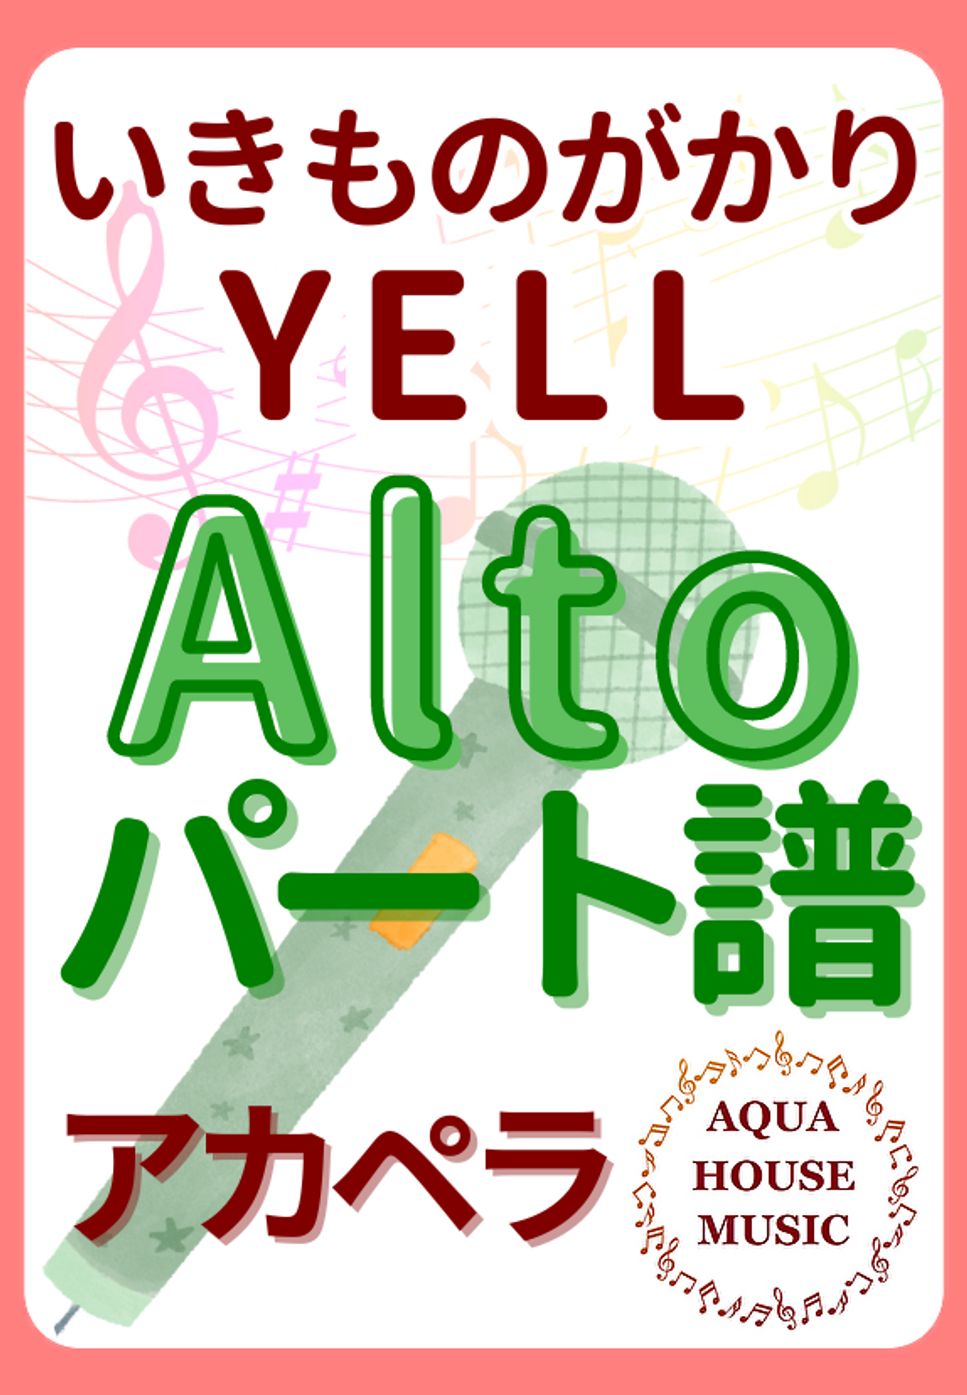 いきものがかり - YELL (アカペラ楽譜♪Altoパート譜) by 飯田 亜紗子